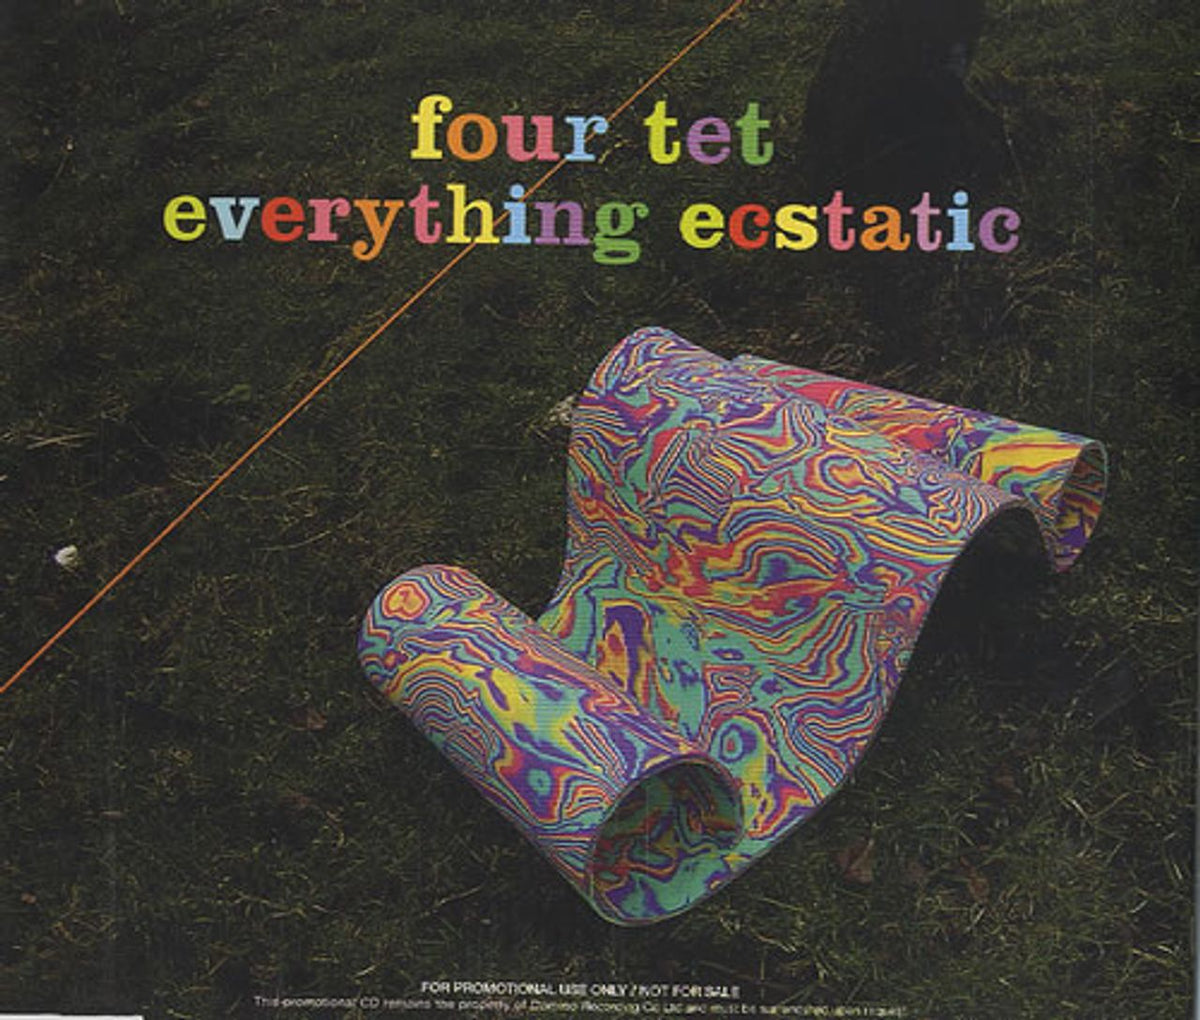 Four Tet Everything Ecstatic UK Promo CD album — RareVinyl.com